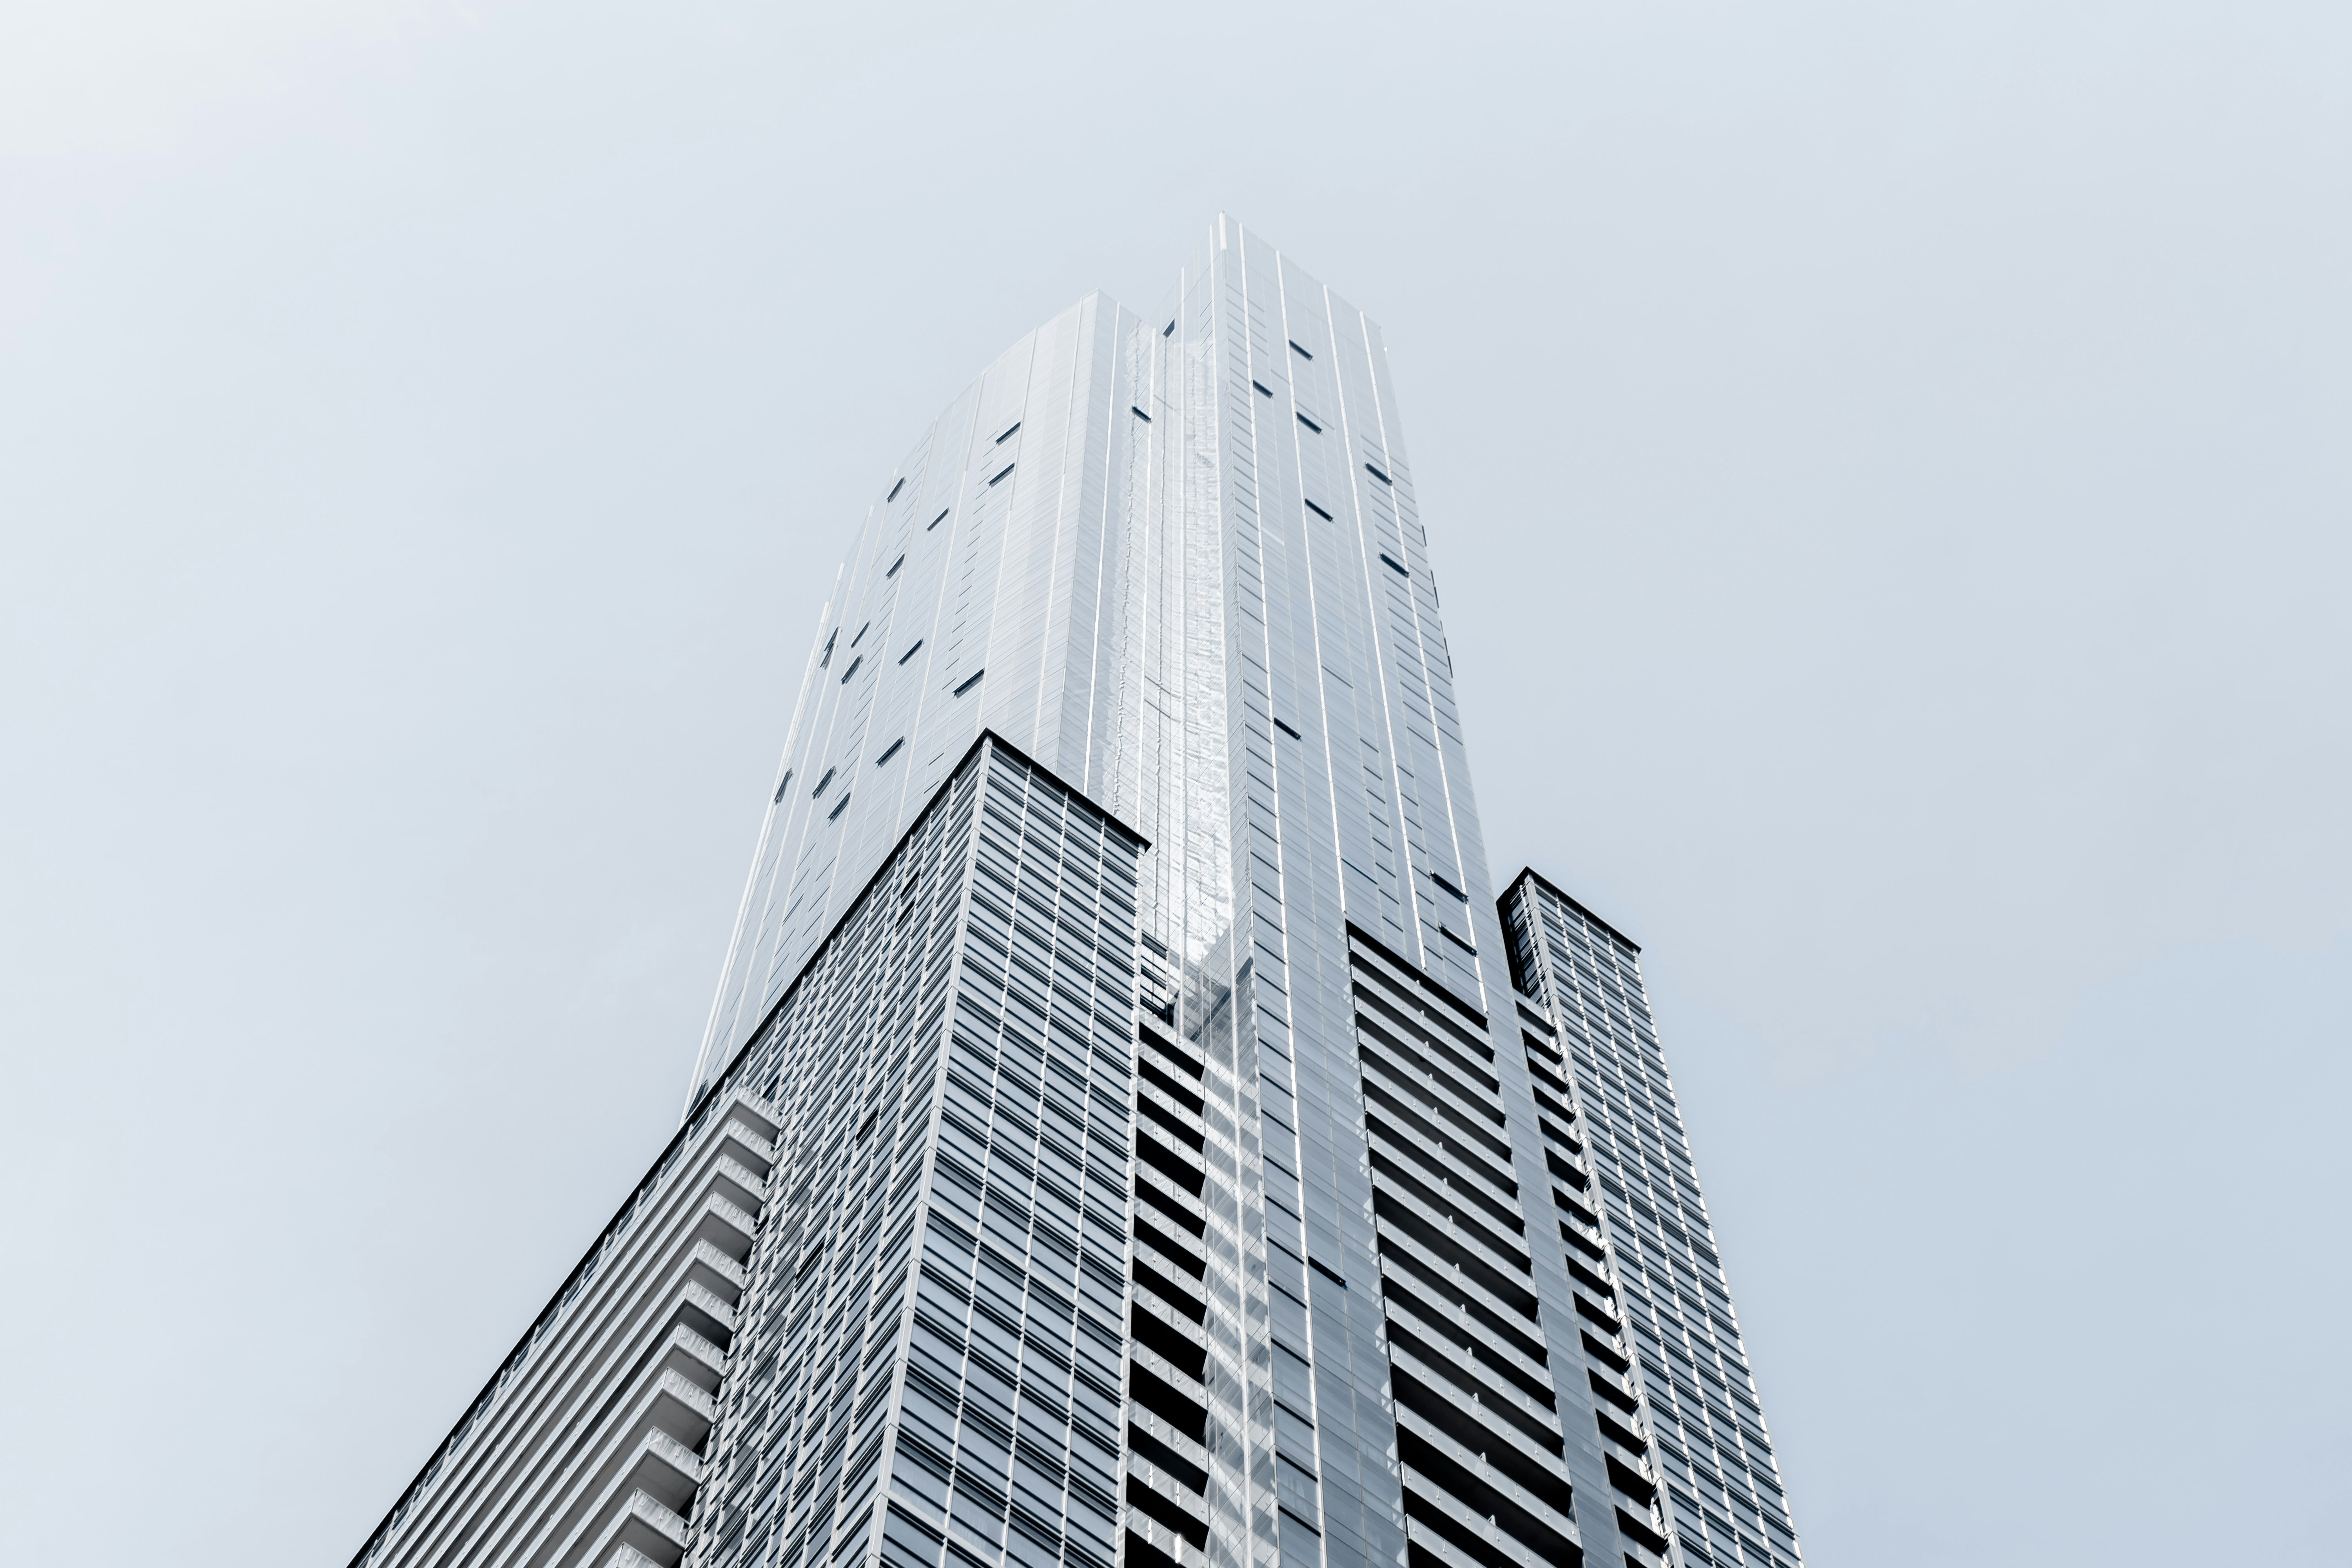 A tall skyscraper in Toronto against a pale blue sky